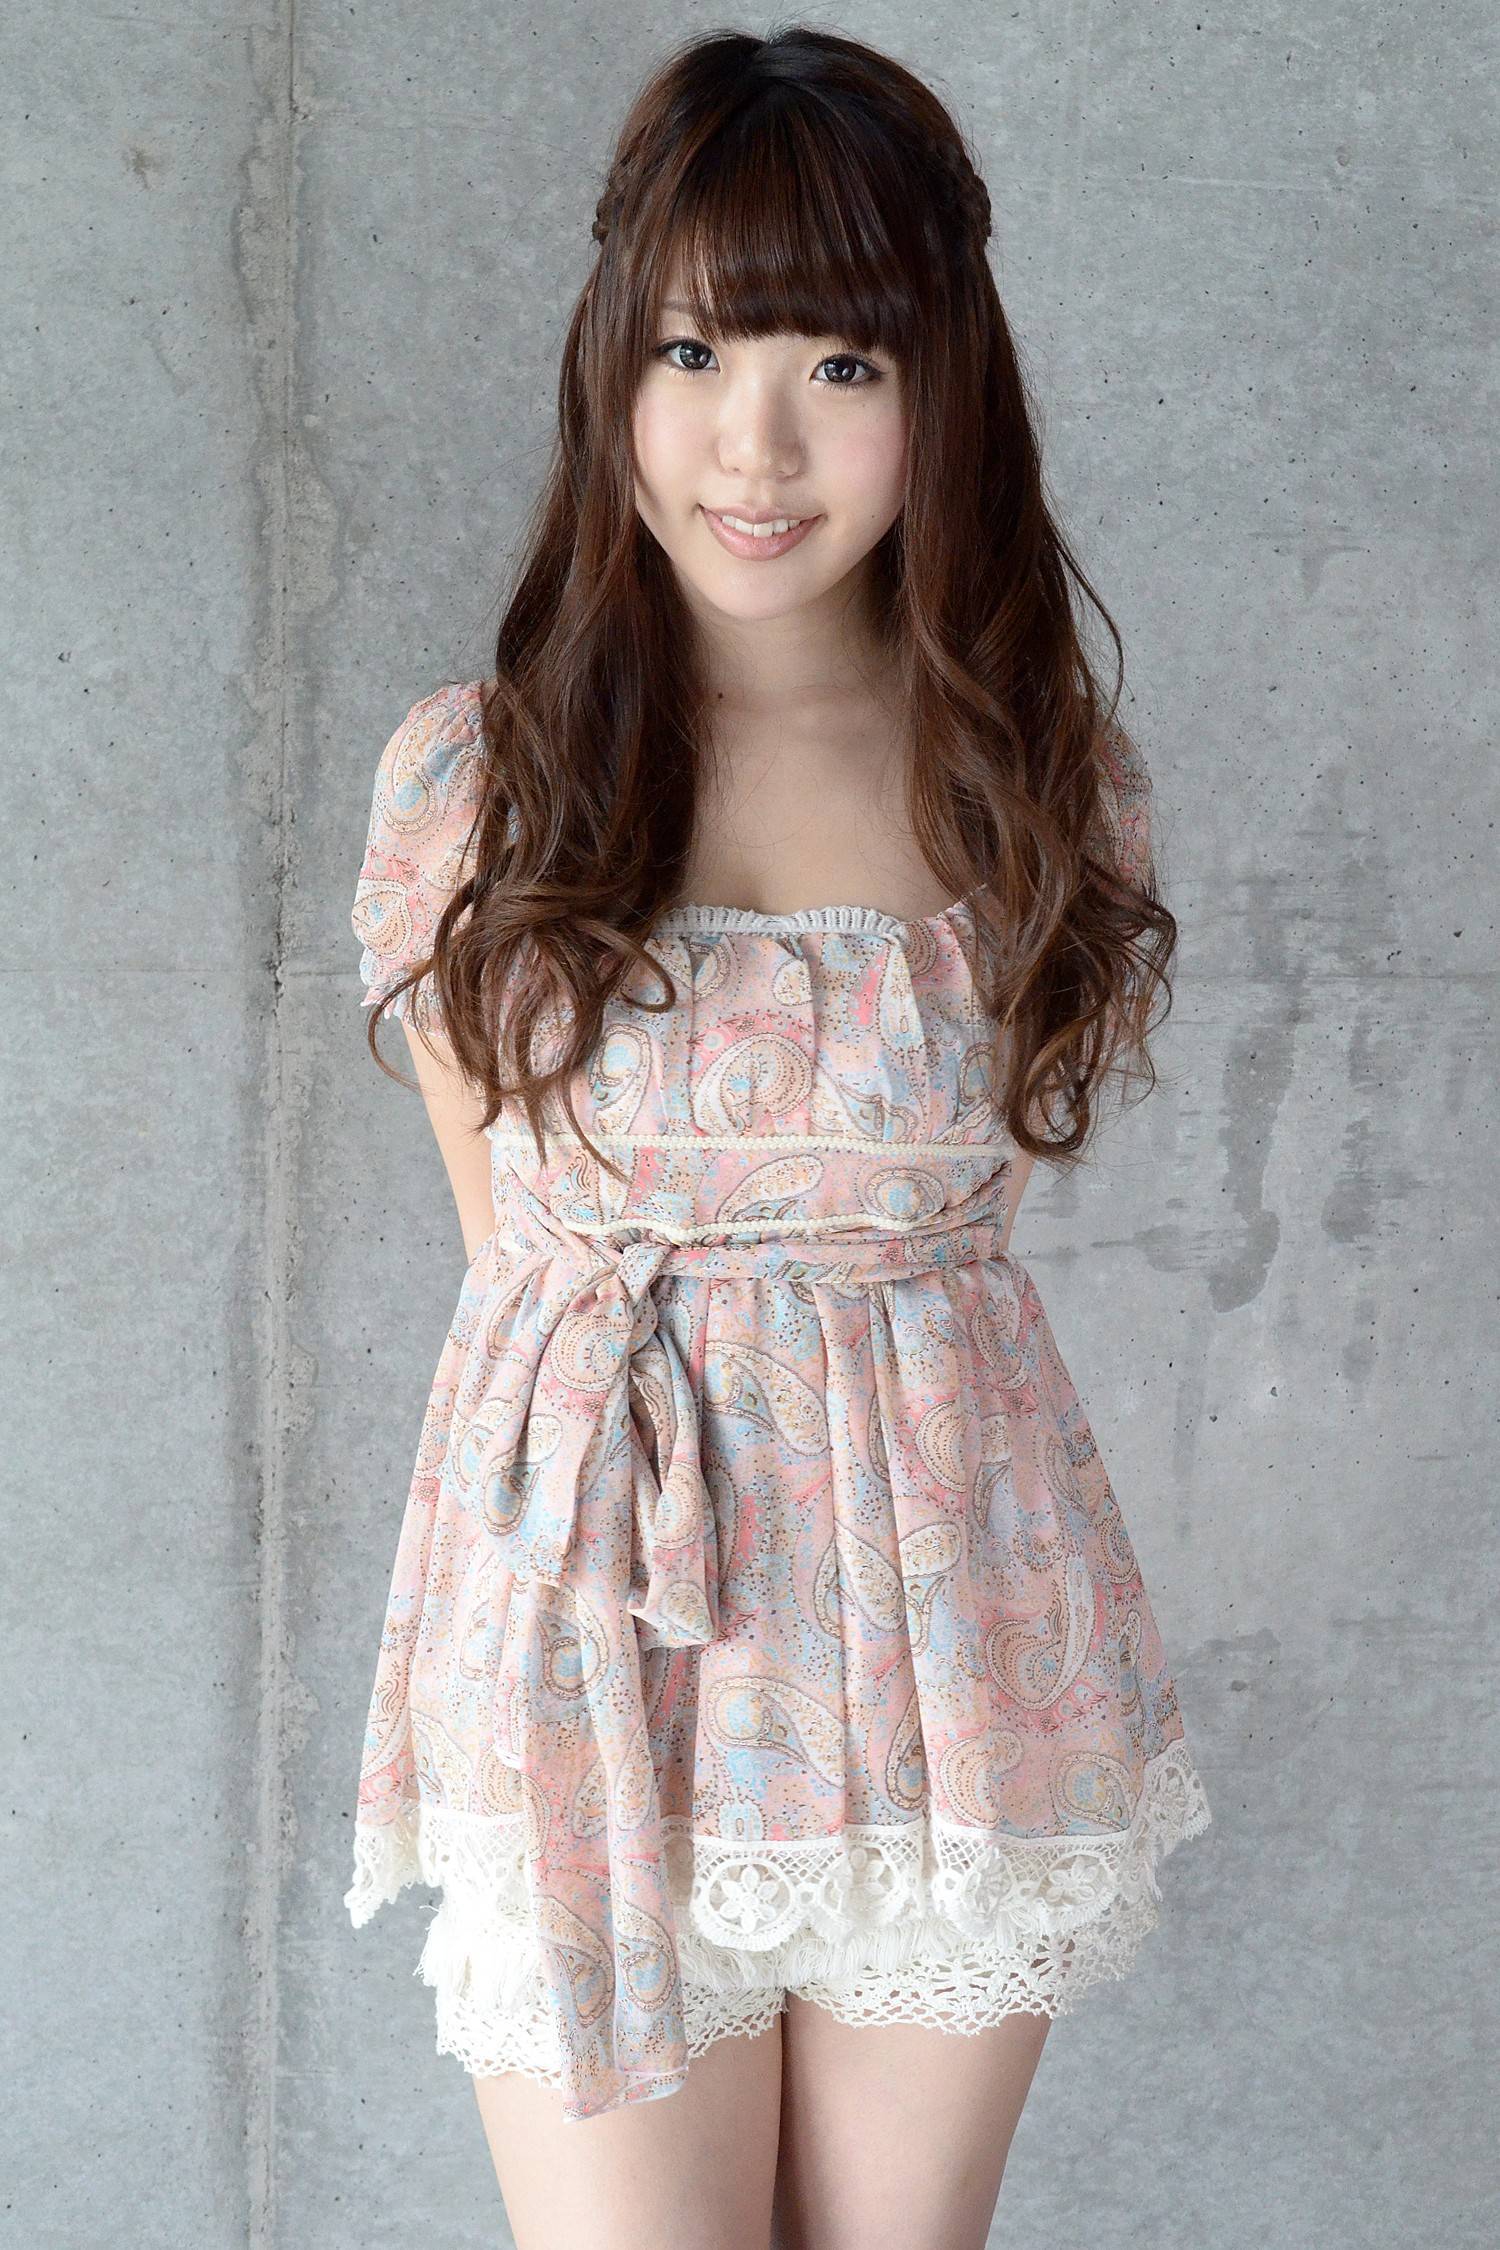 Japanese beauty beautiful girl